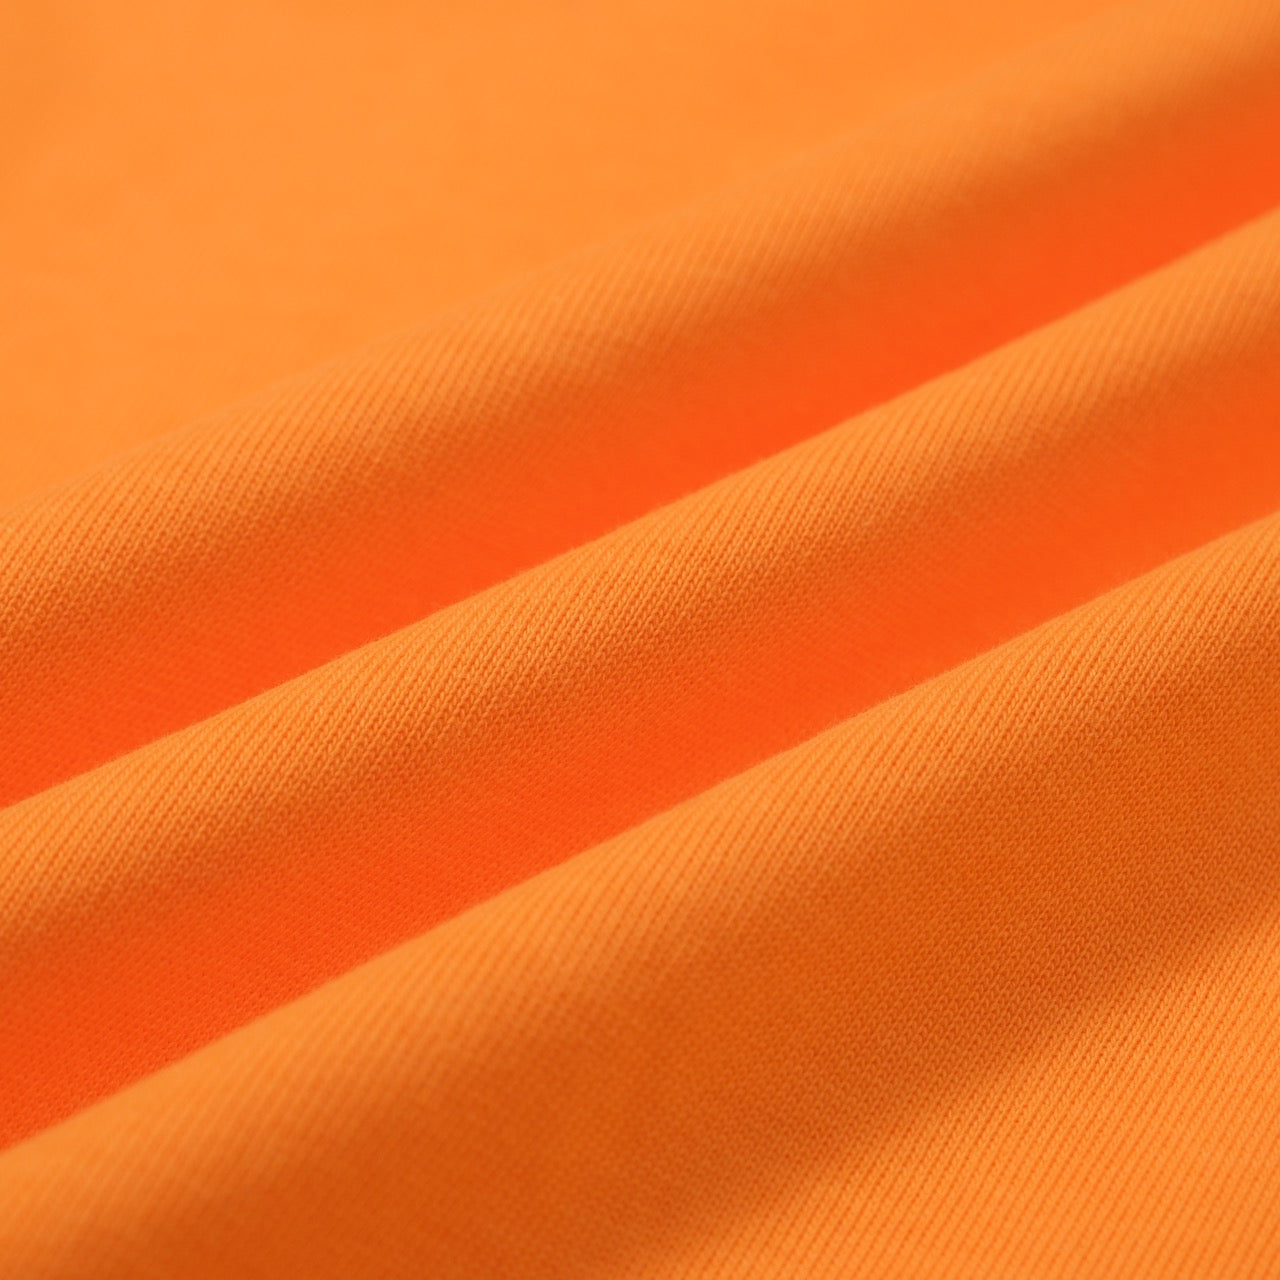 Men's Orange Vintage Double Beige Striped T-Shirt